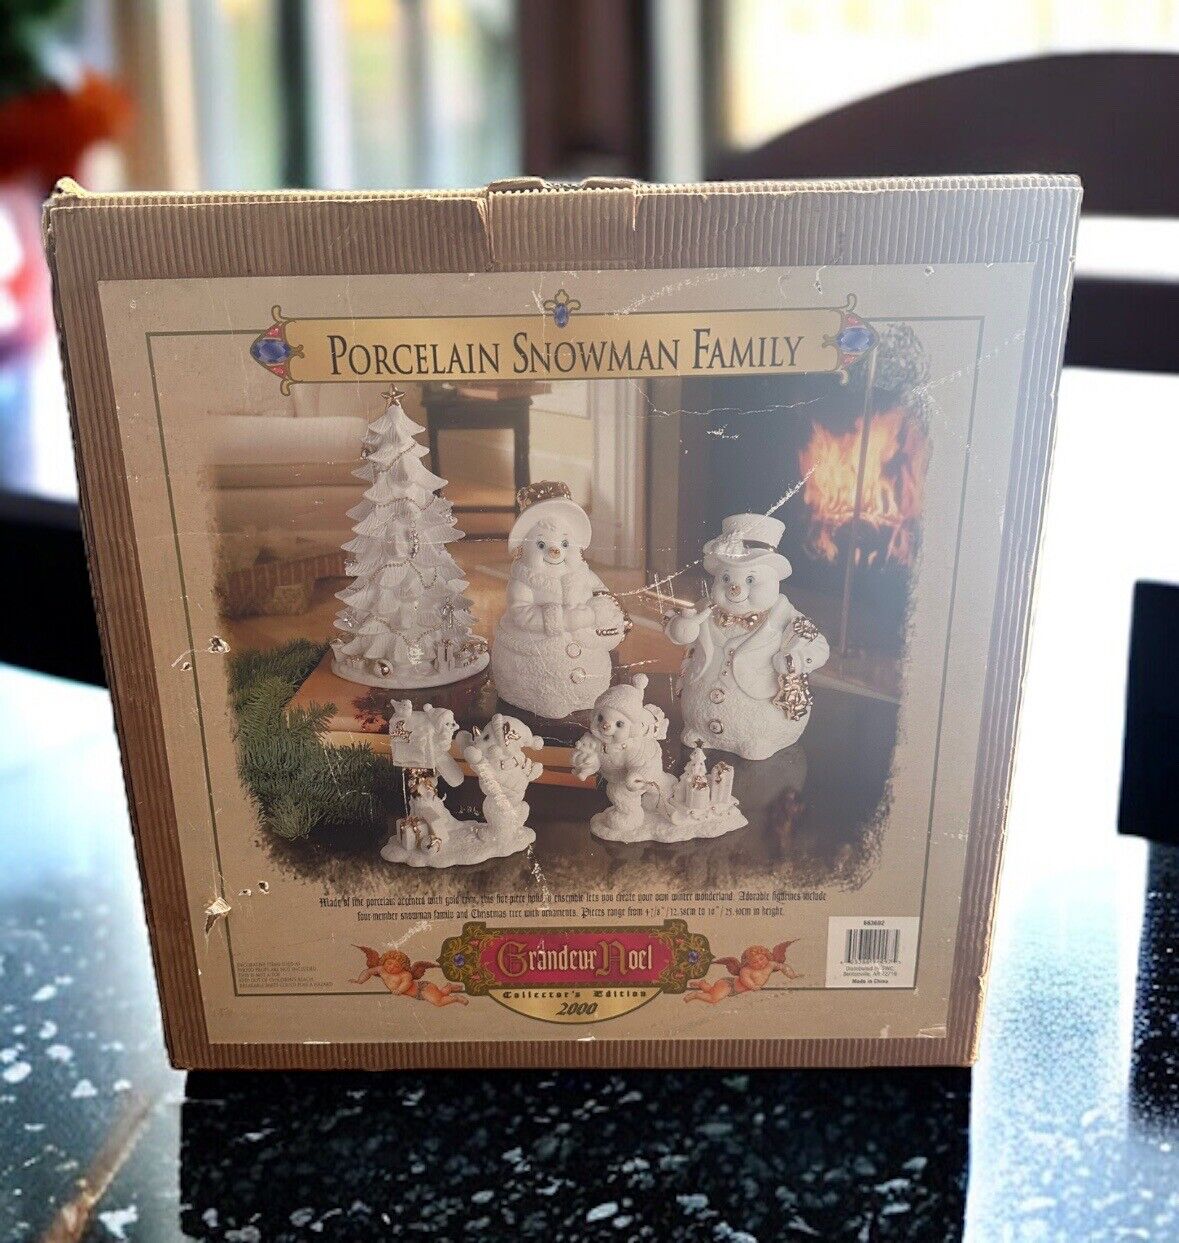 2000 Collectors Edition Grandeur Noel 5 Piece Porcelain Snowman Family Christmas